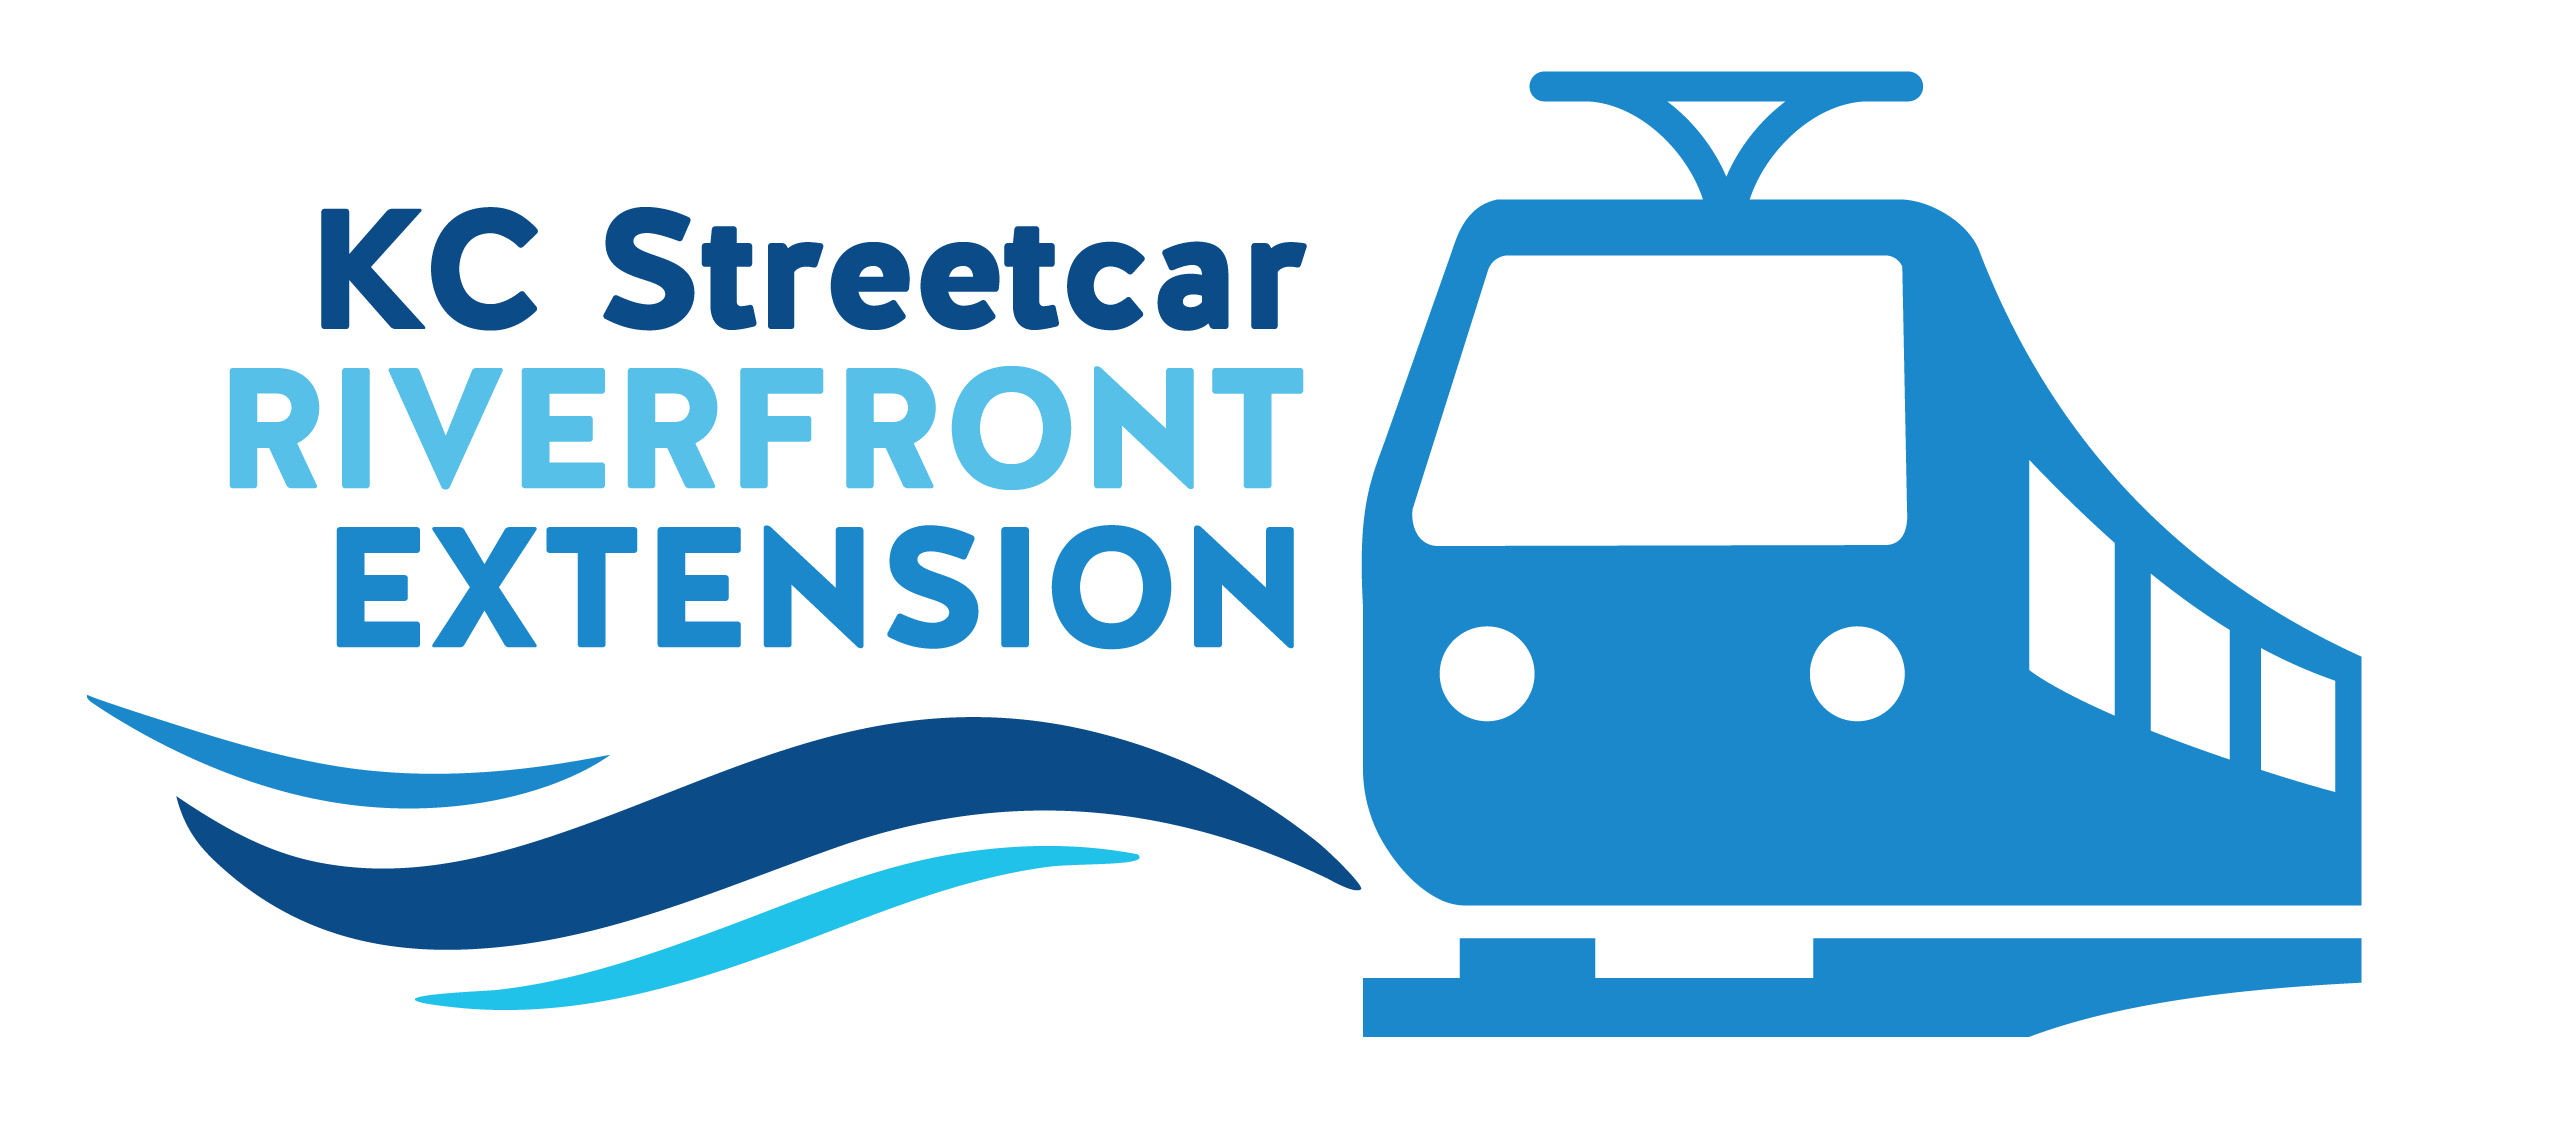 kc streetcar logo